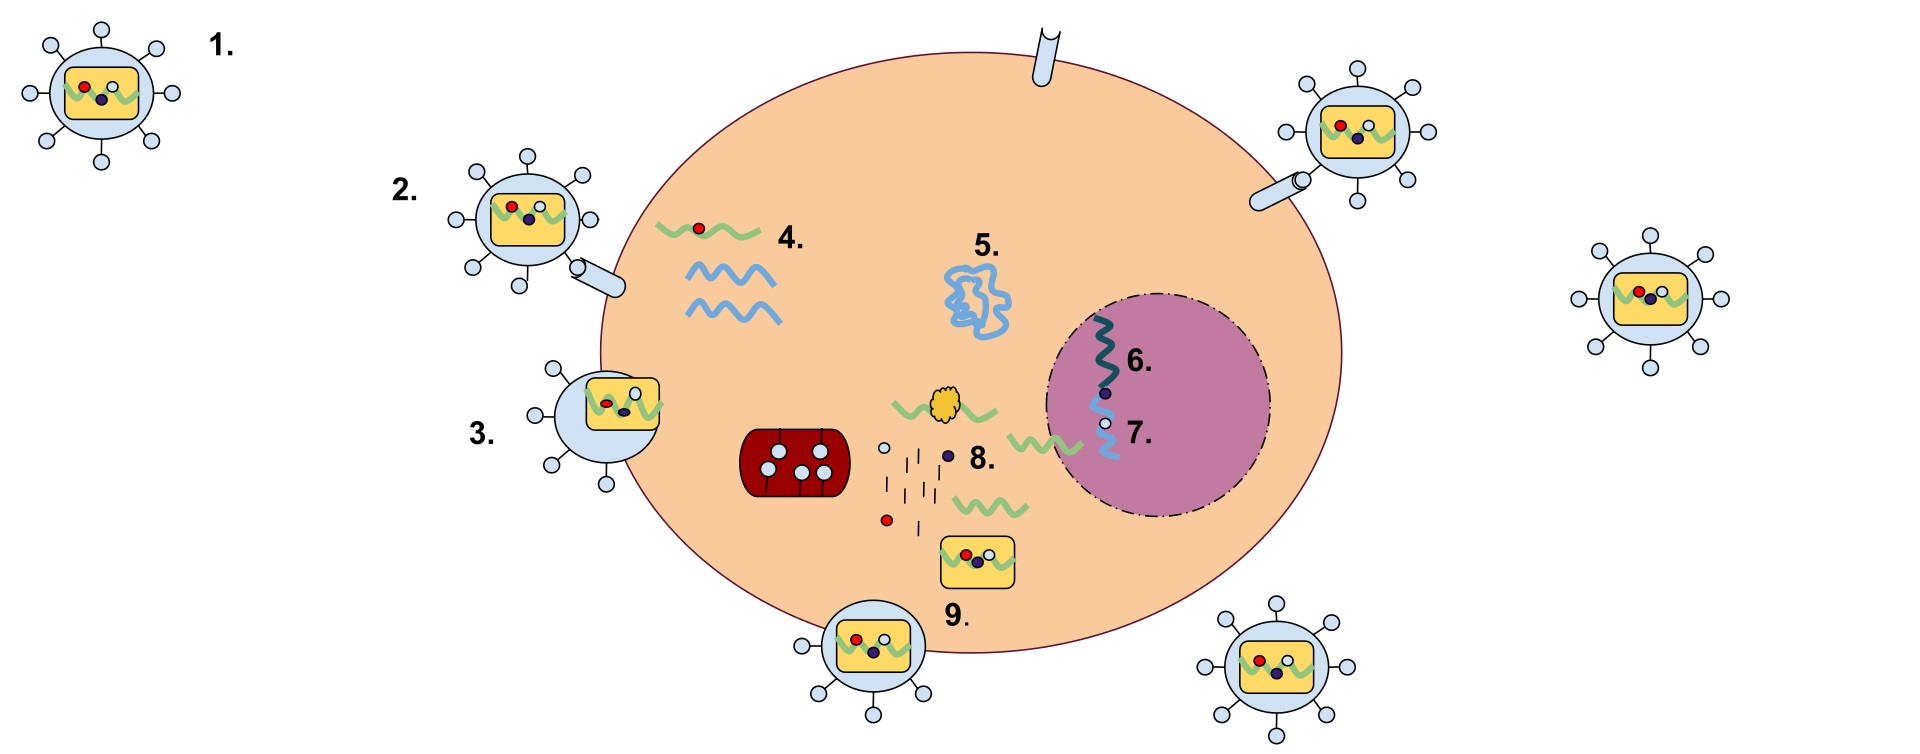 Retrovirus má membránu obsahující glykoproteiny, které se mohou vázat na receptorový protein hostitelské buňky. Uvnitř buňky se nacházejí dvě vlákna RNA obsahující tři enzymy: proteázu, reverzní transkriptázu a integrázu. Prvním krokem replikace je v